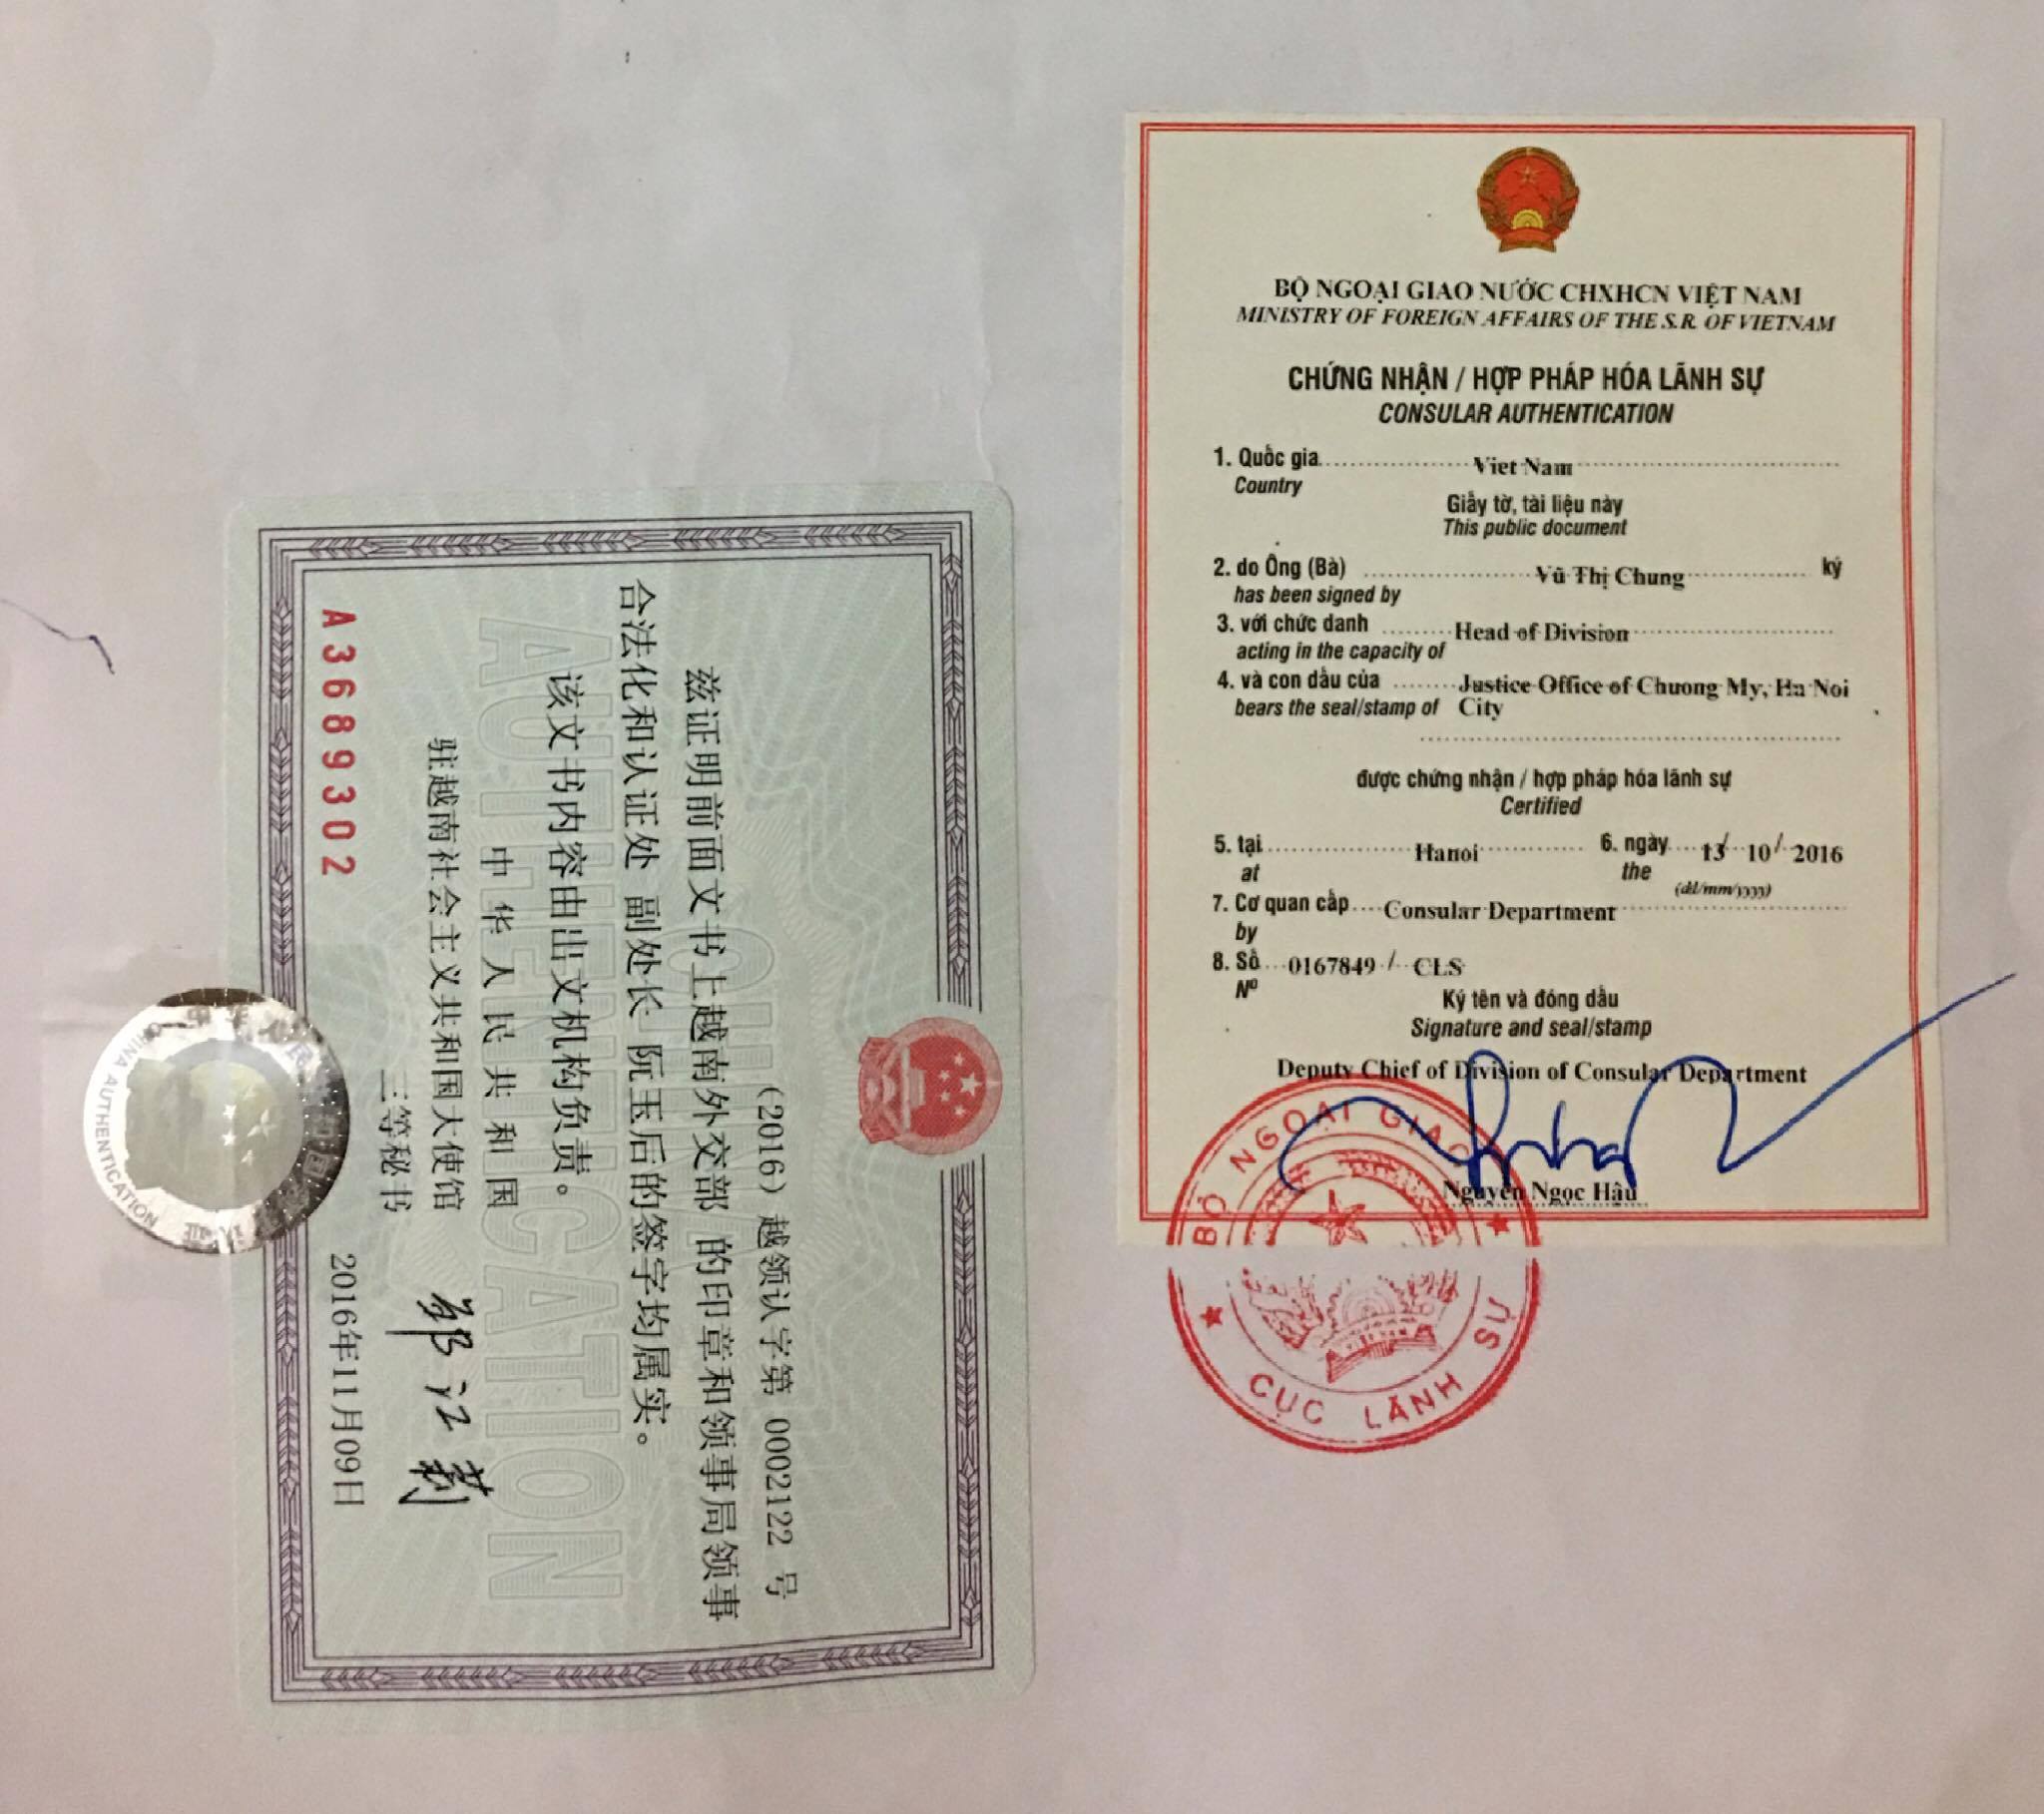 Hợp pháp hóa lãnh sự | Thủ tục kết hôn với người Trung Quốc